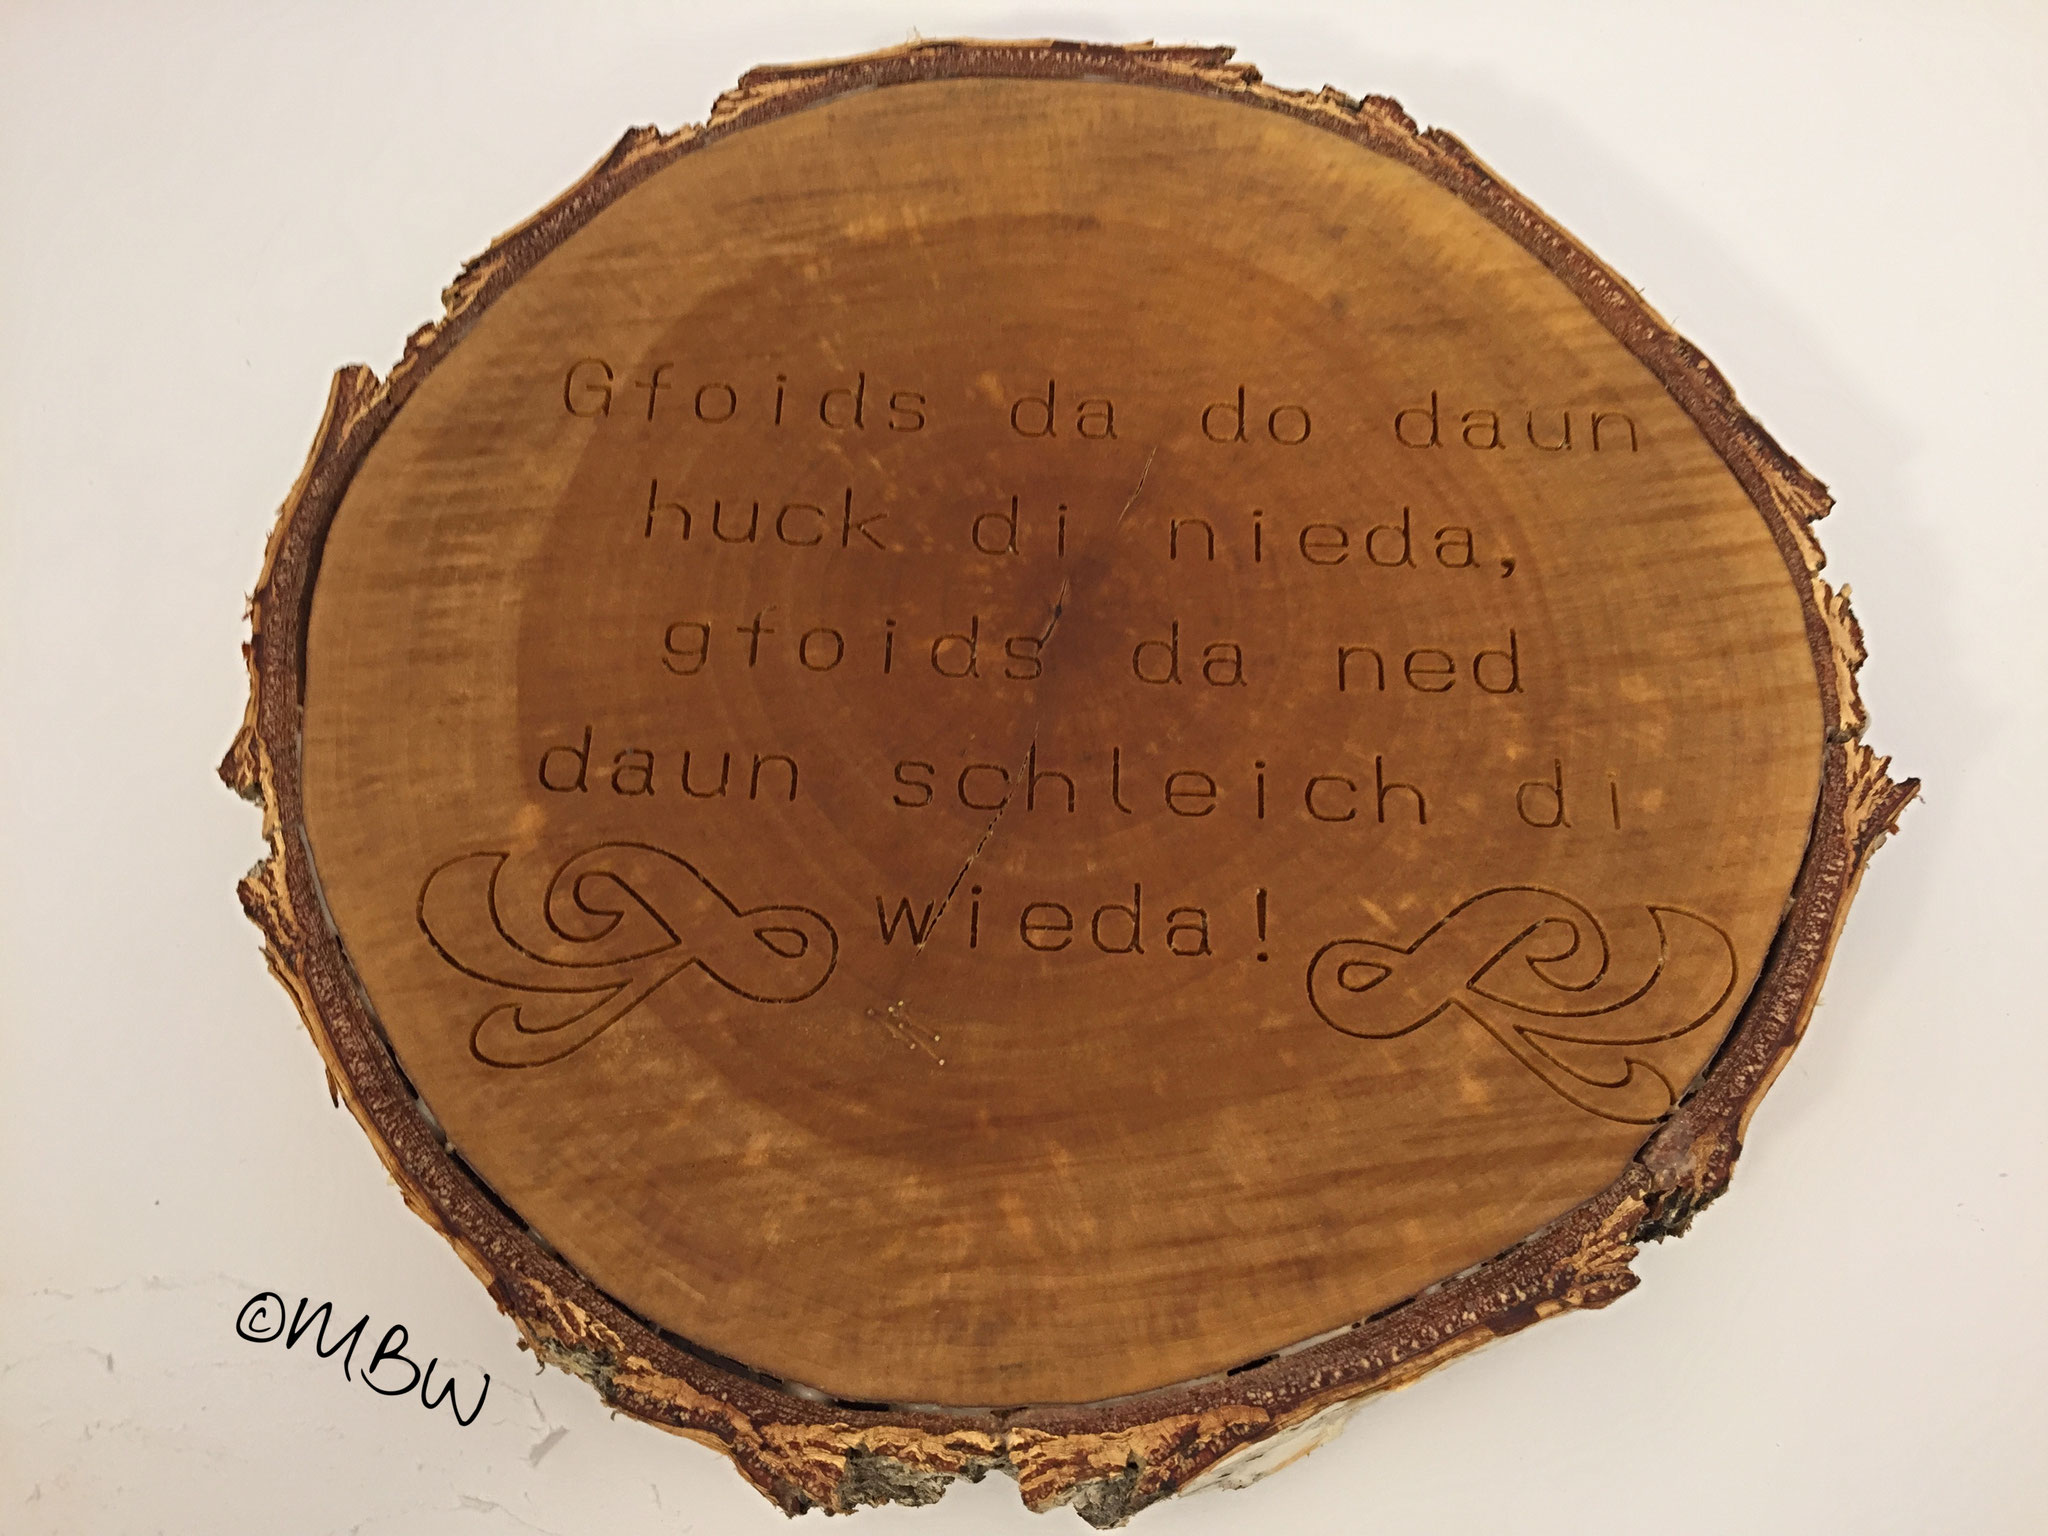 Schild "Gfoids da do" - Birkenbaumstammscheibe